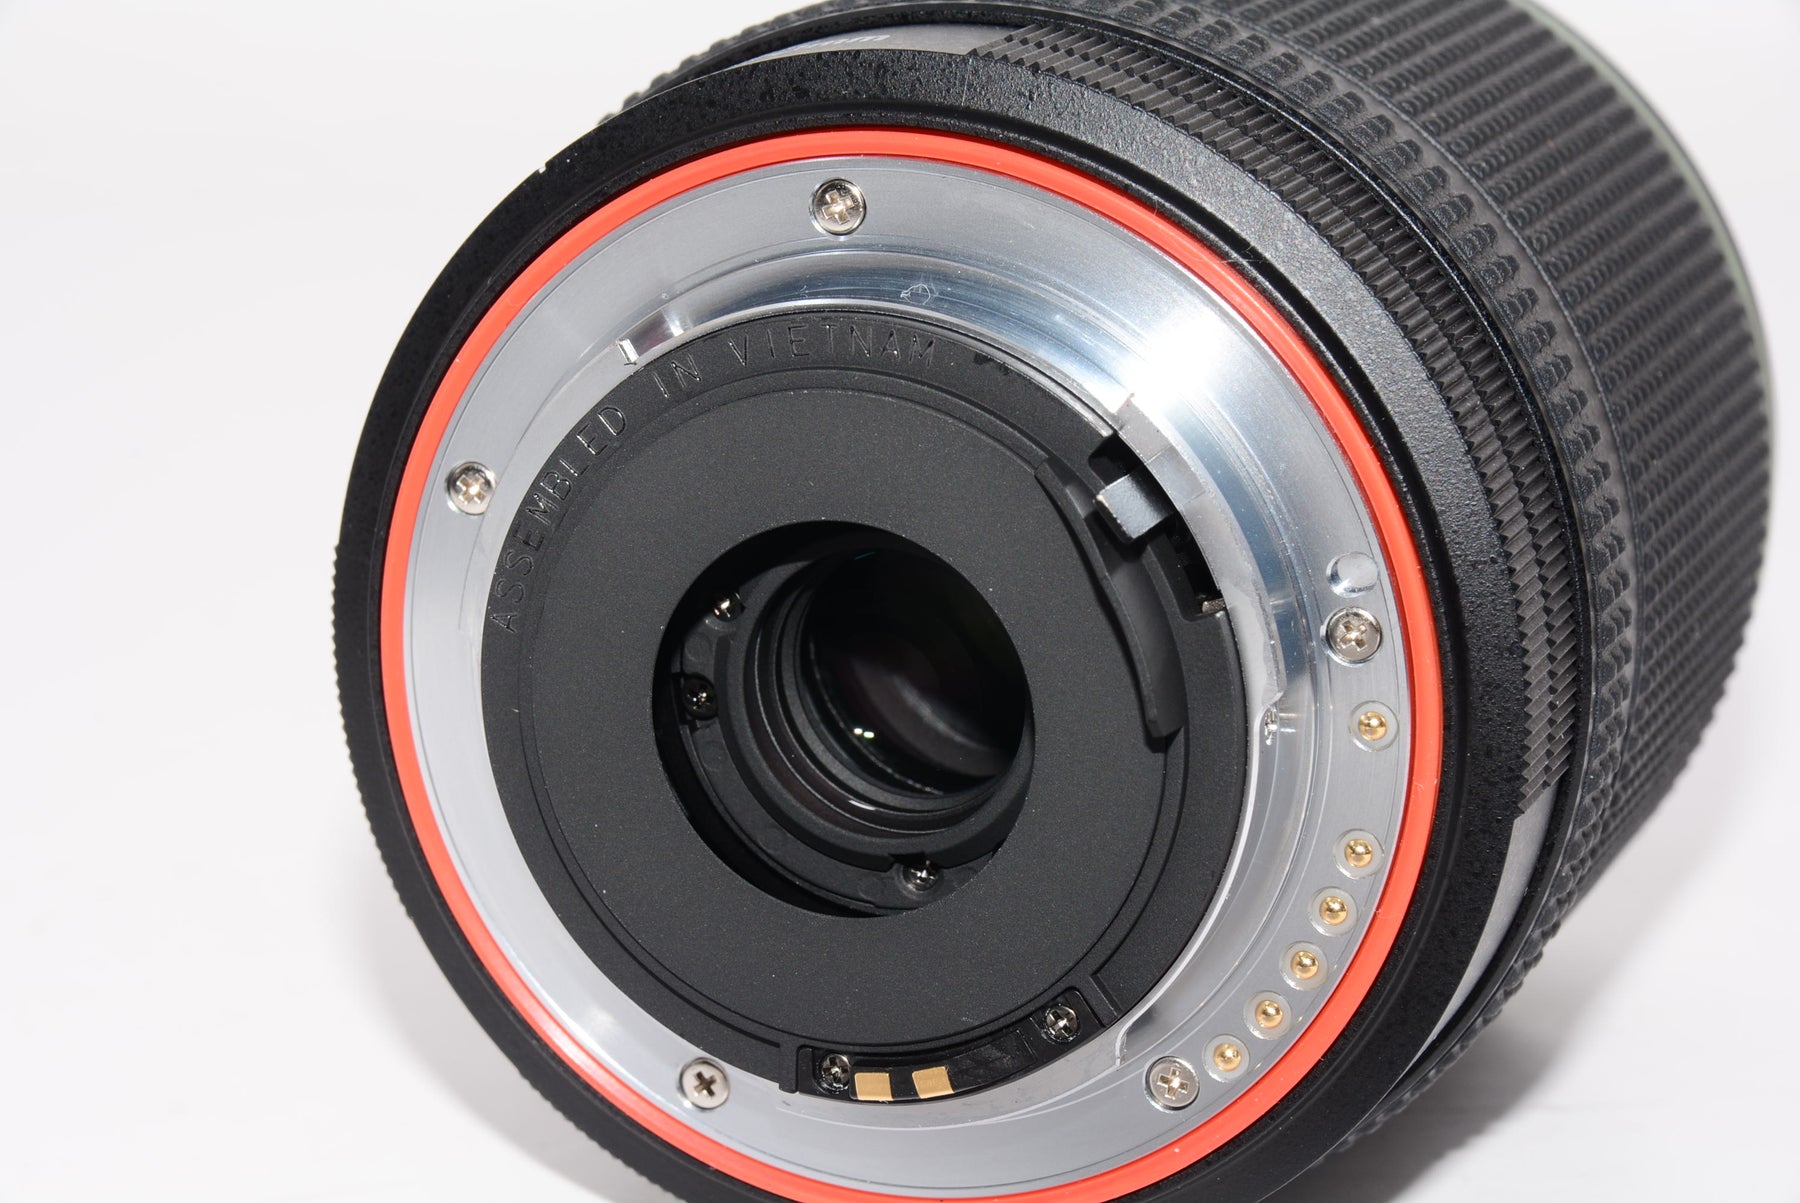 【外観特上級】PENTAX K-70 18-135mmWRレンズキット ブラック デジタル一眼レフカメラ 超高感度・高画質 2424万画素APS-C  センサー アウトドアに最適 全天候型 一眼レフ 4.5段ボディ内手振れ補正搭載 明るく見やすいガラスペンタプリズム採用の視野率100%光学ファインダー 